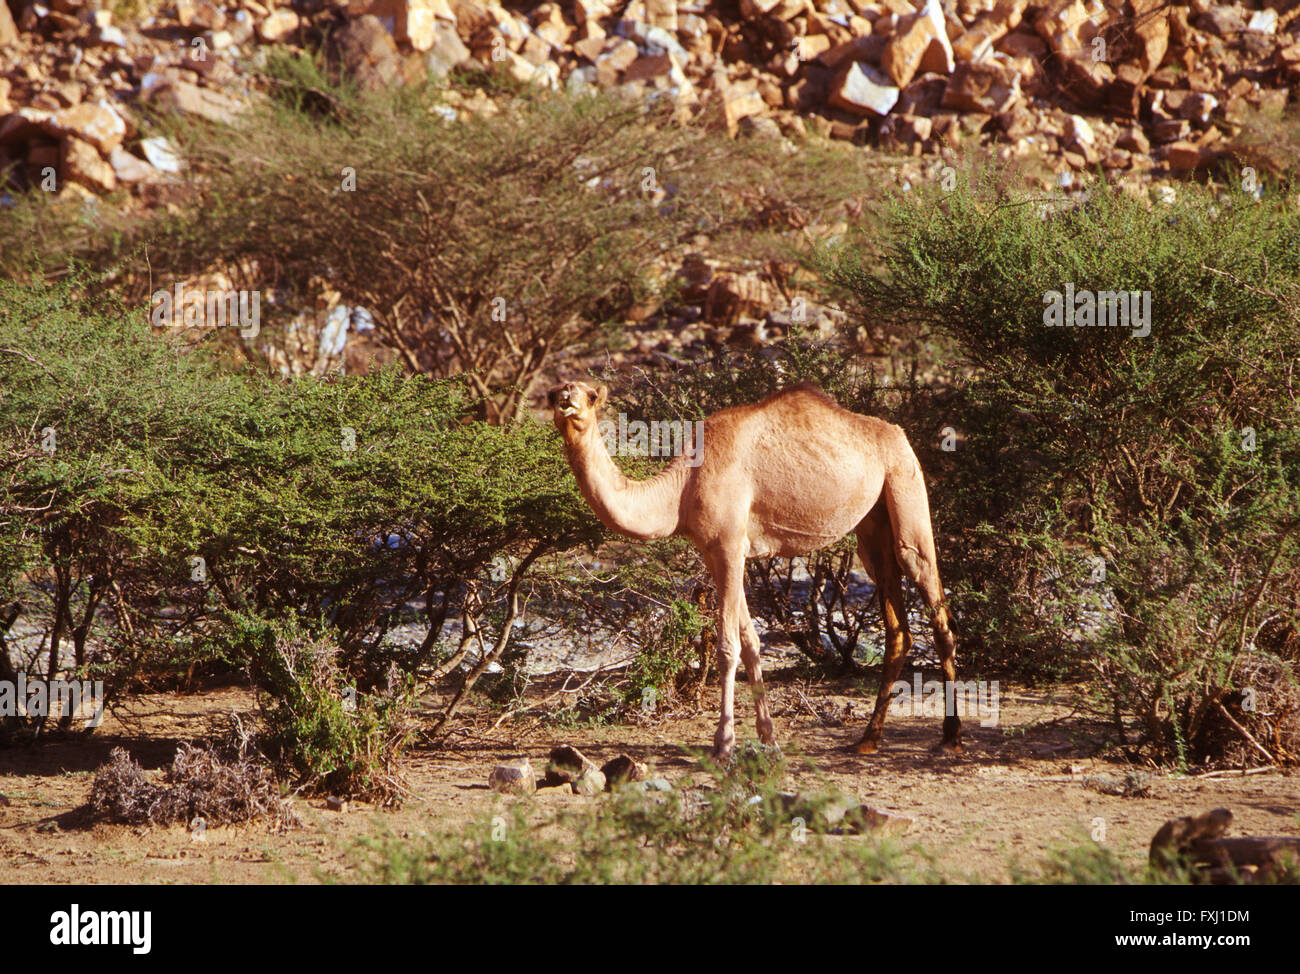 Dromedario camello forrajes para alimento en las colinas cercanas a Bishah, Reino de Arabia Saudita Foto de stock